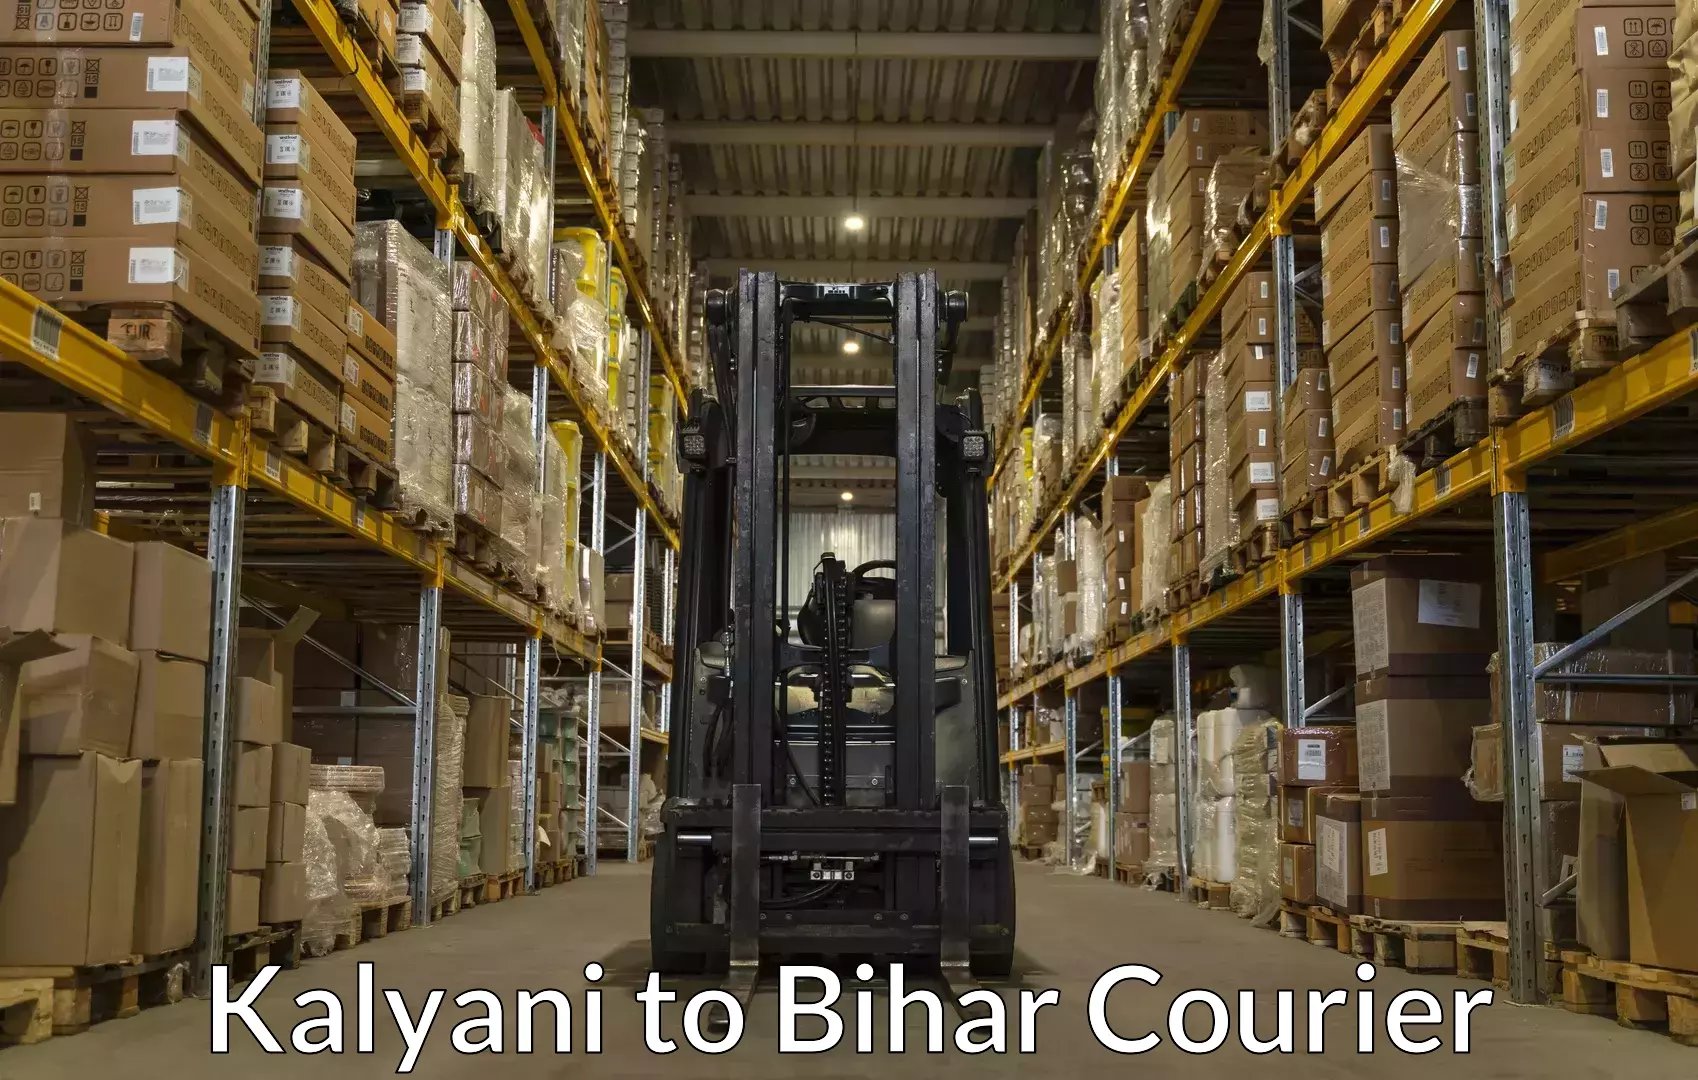 Baggage transport logistics Kalyani to Bettiah